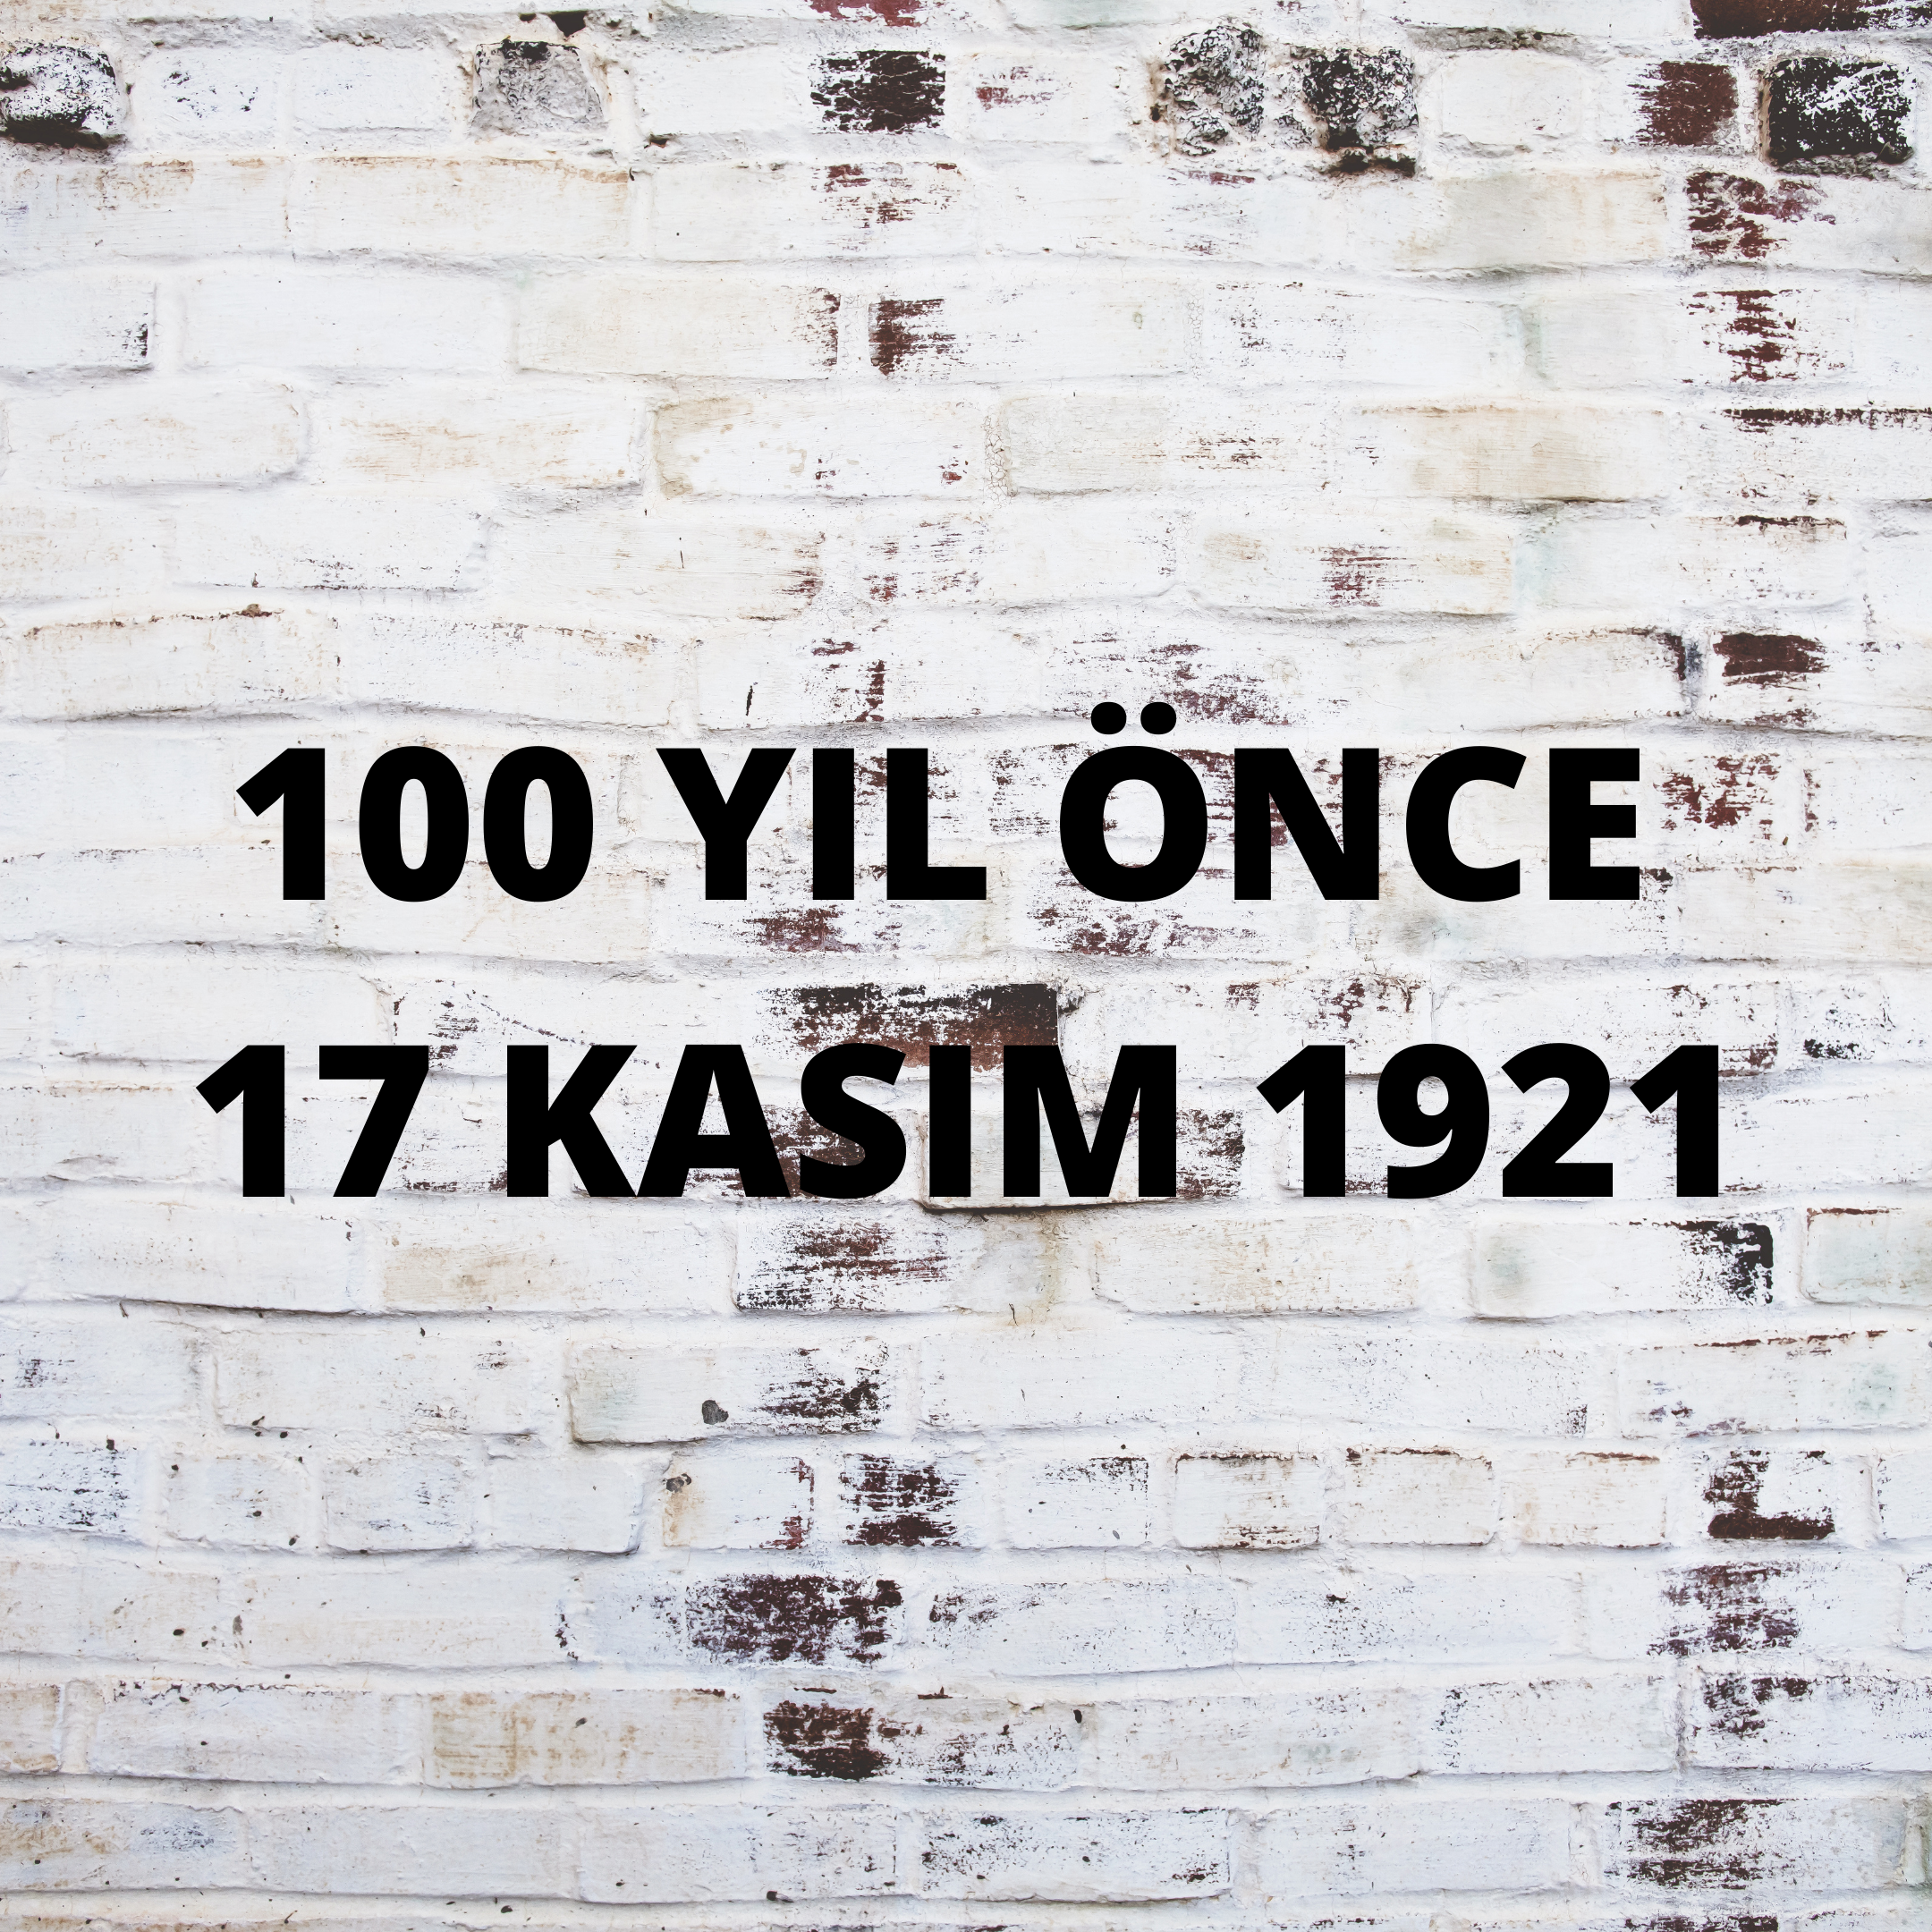 100 YIL ÖNCE 17 KASIM 1921